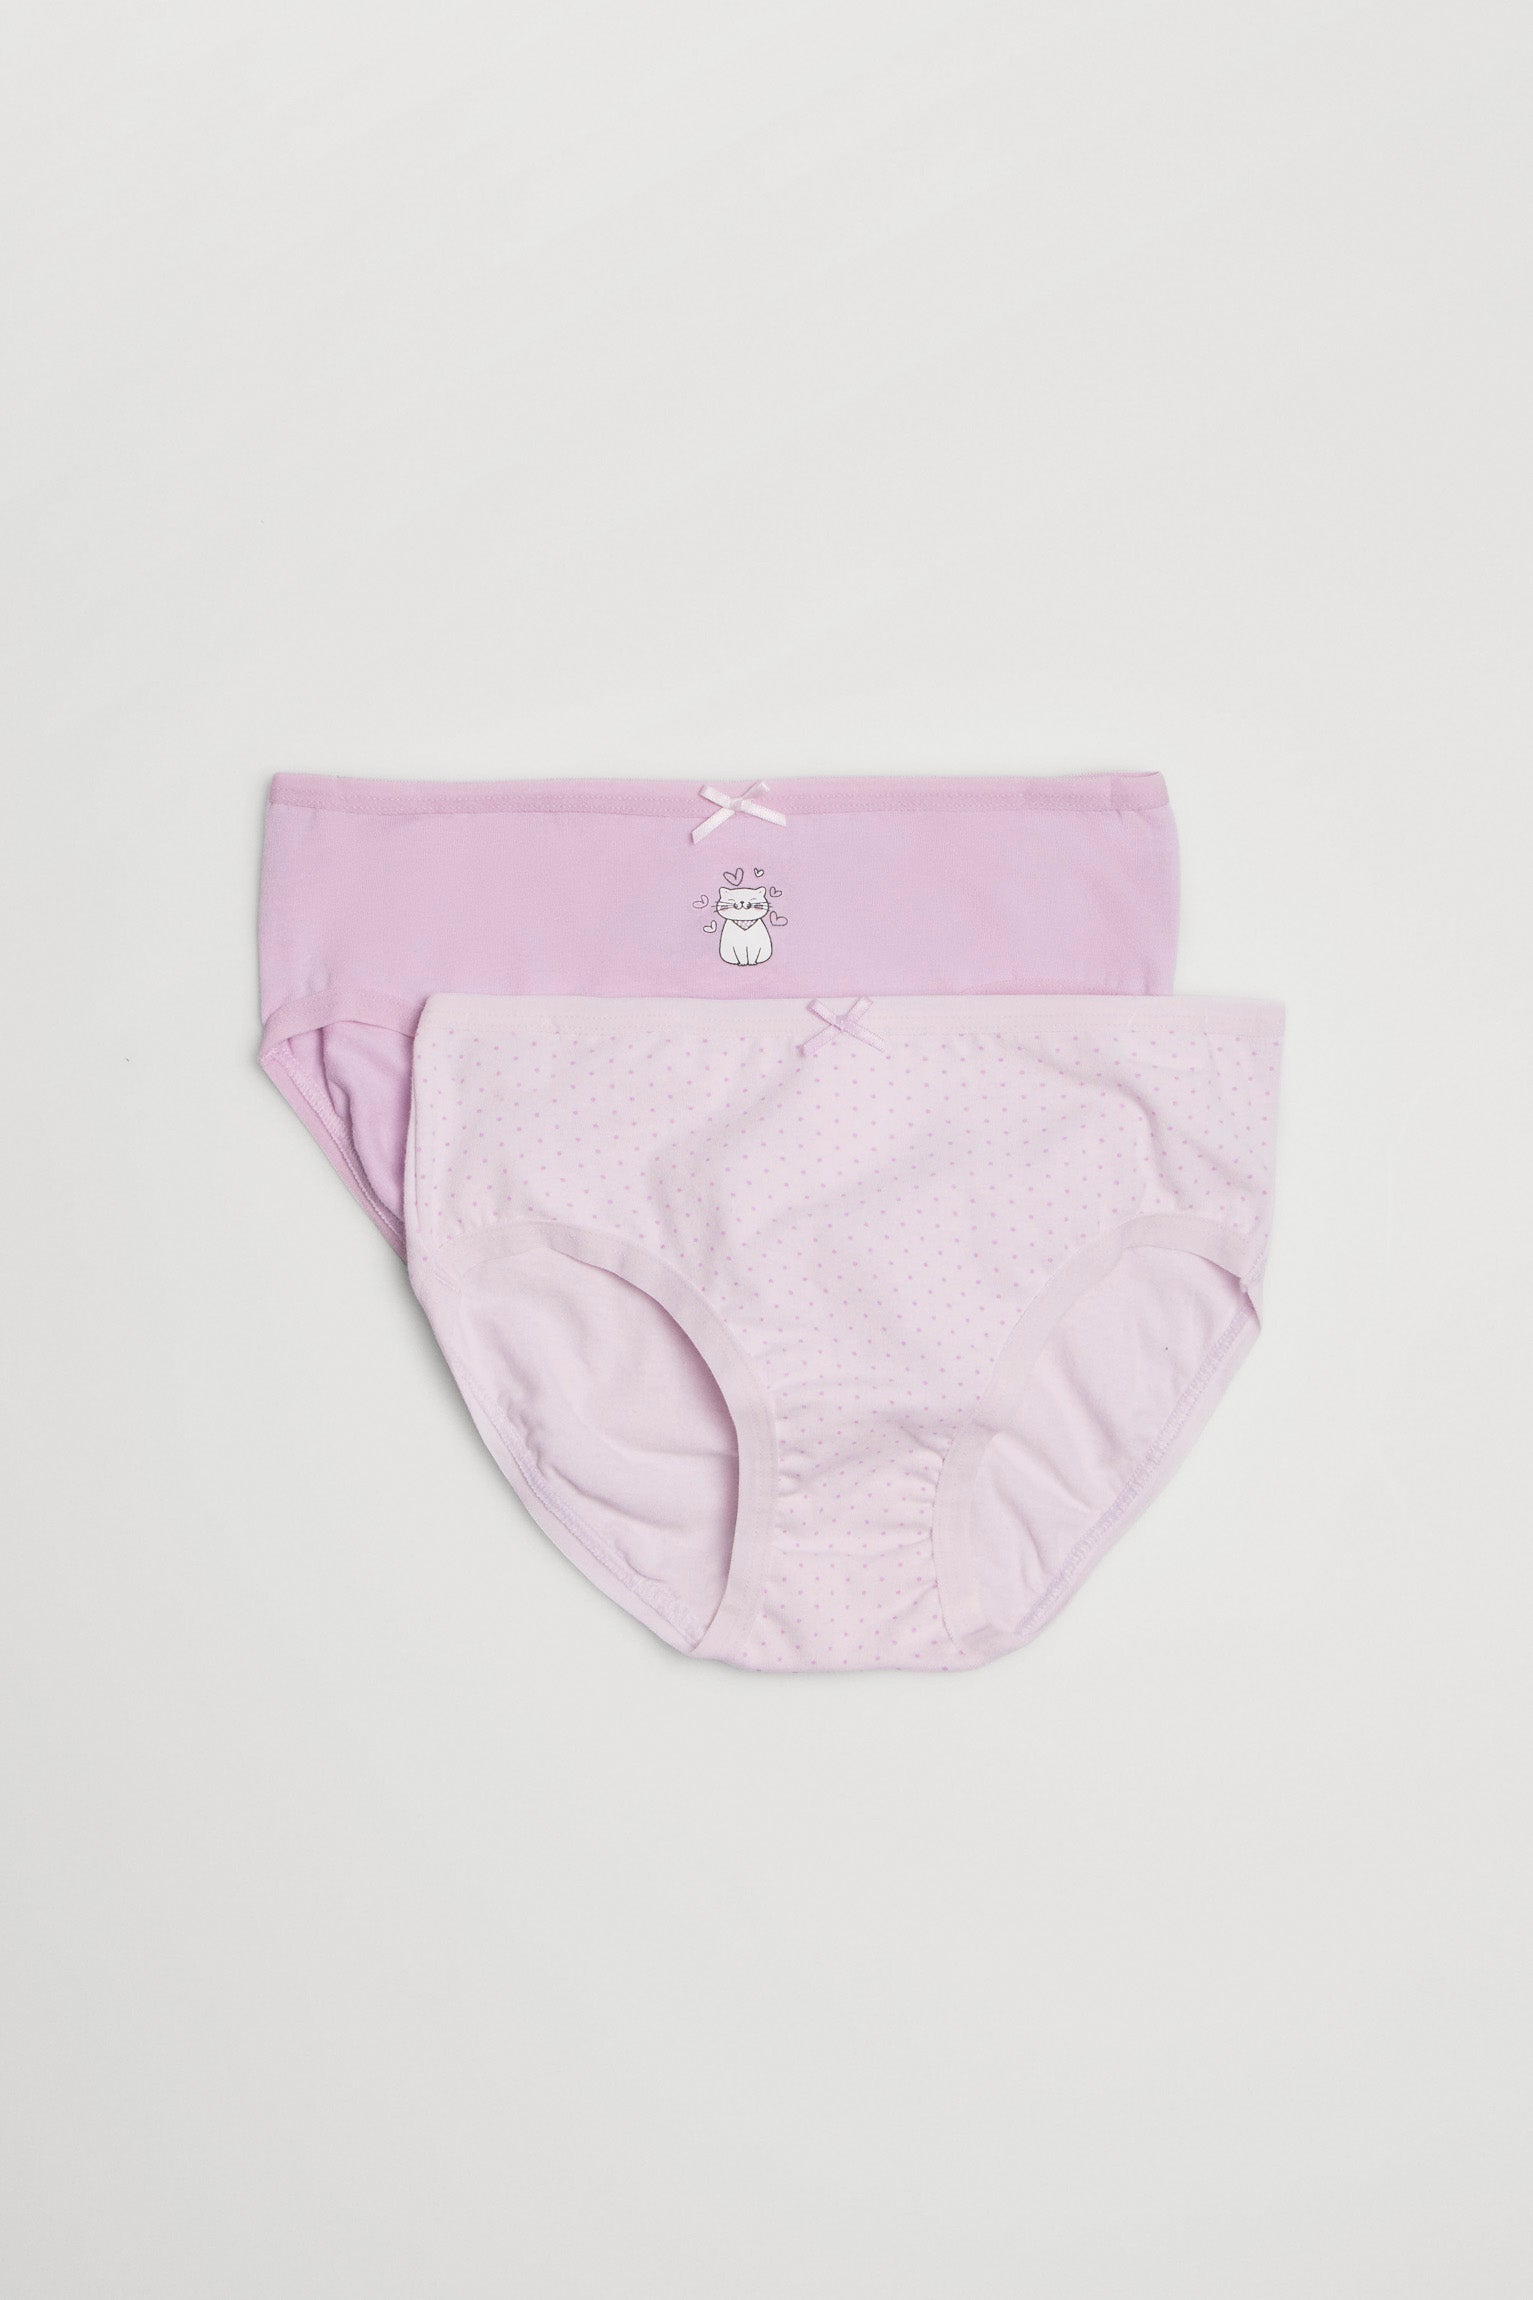 Girl's panties, Children's panties